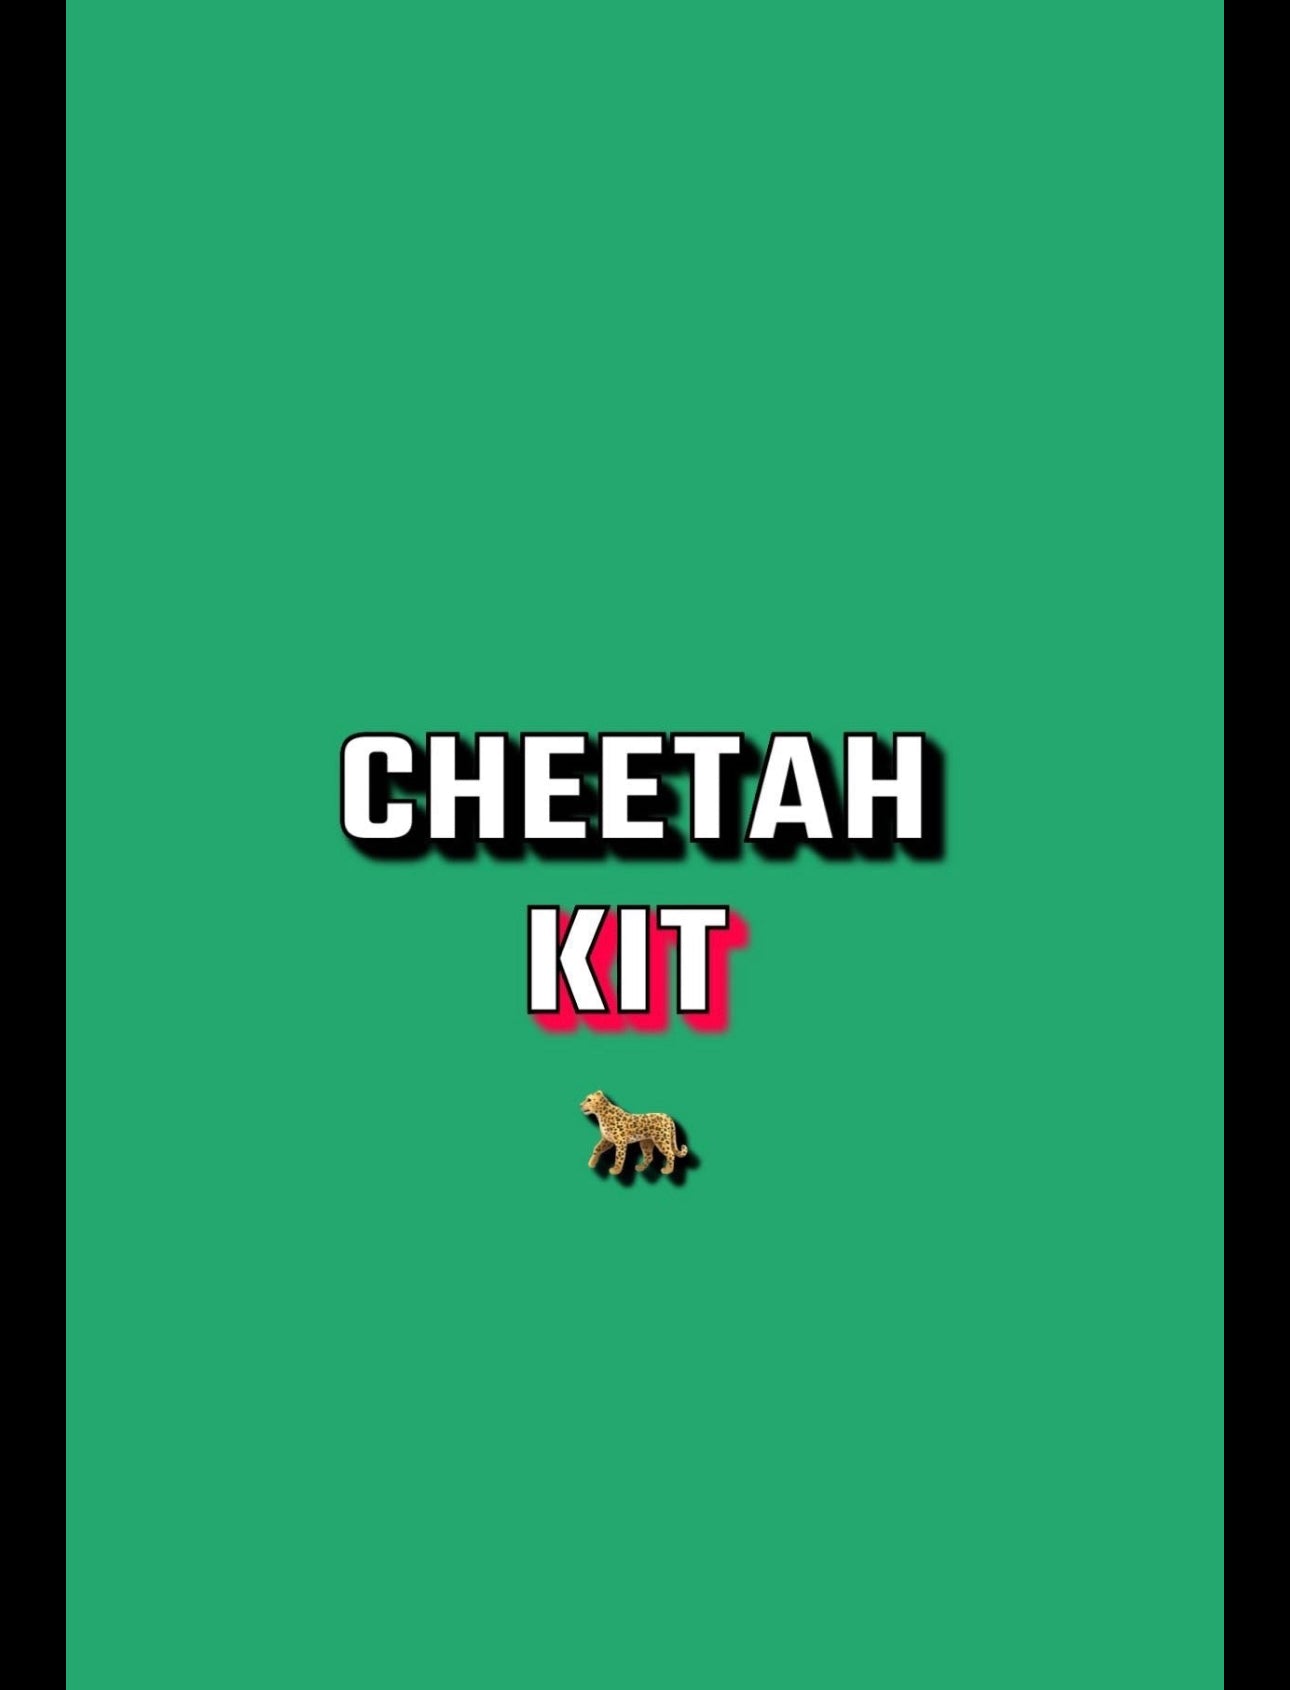 Cheetah KIT